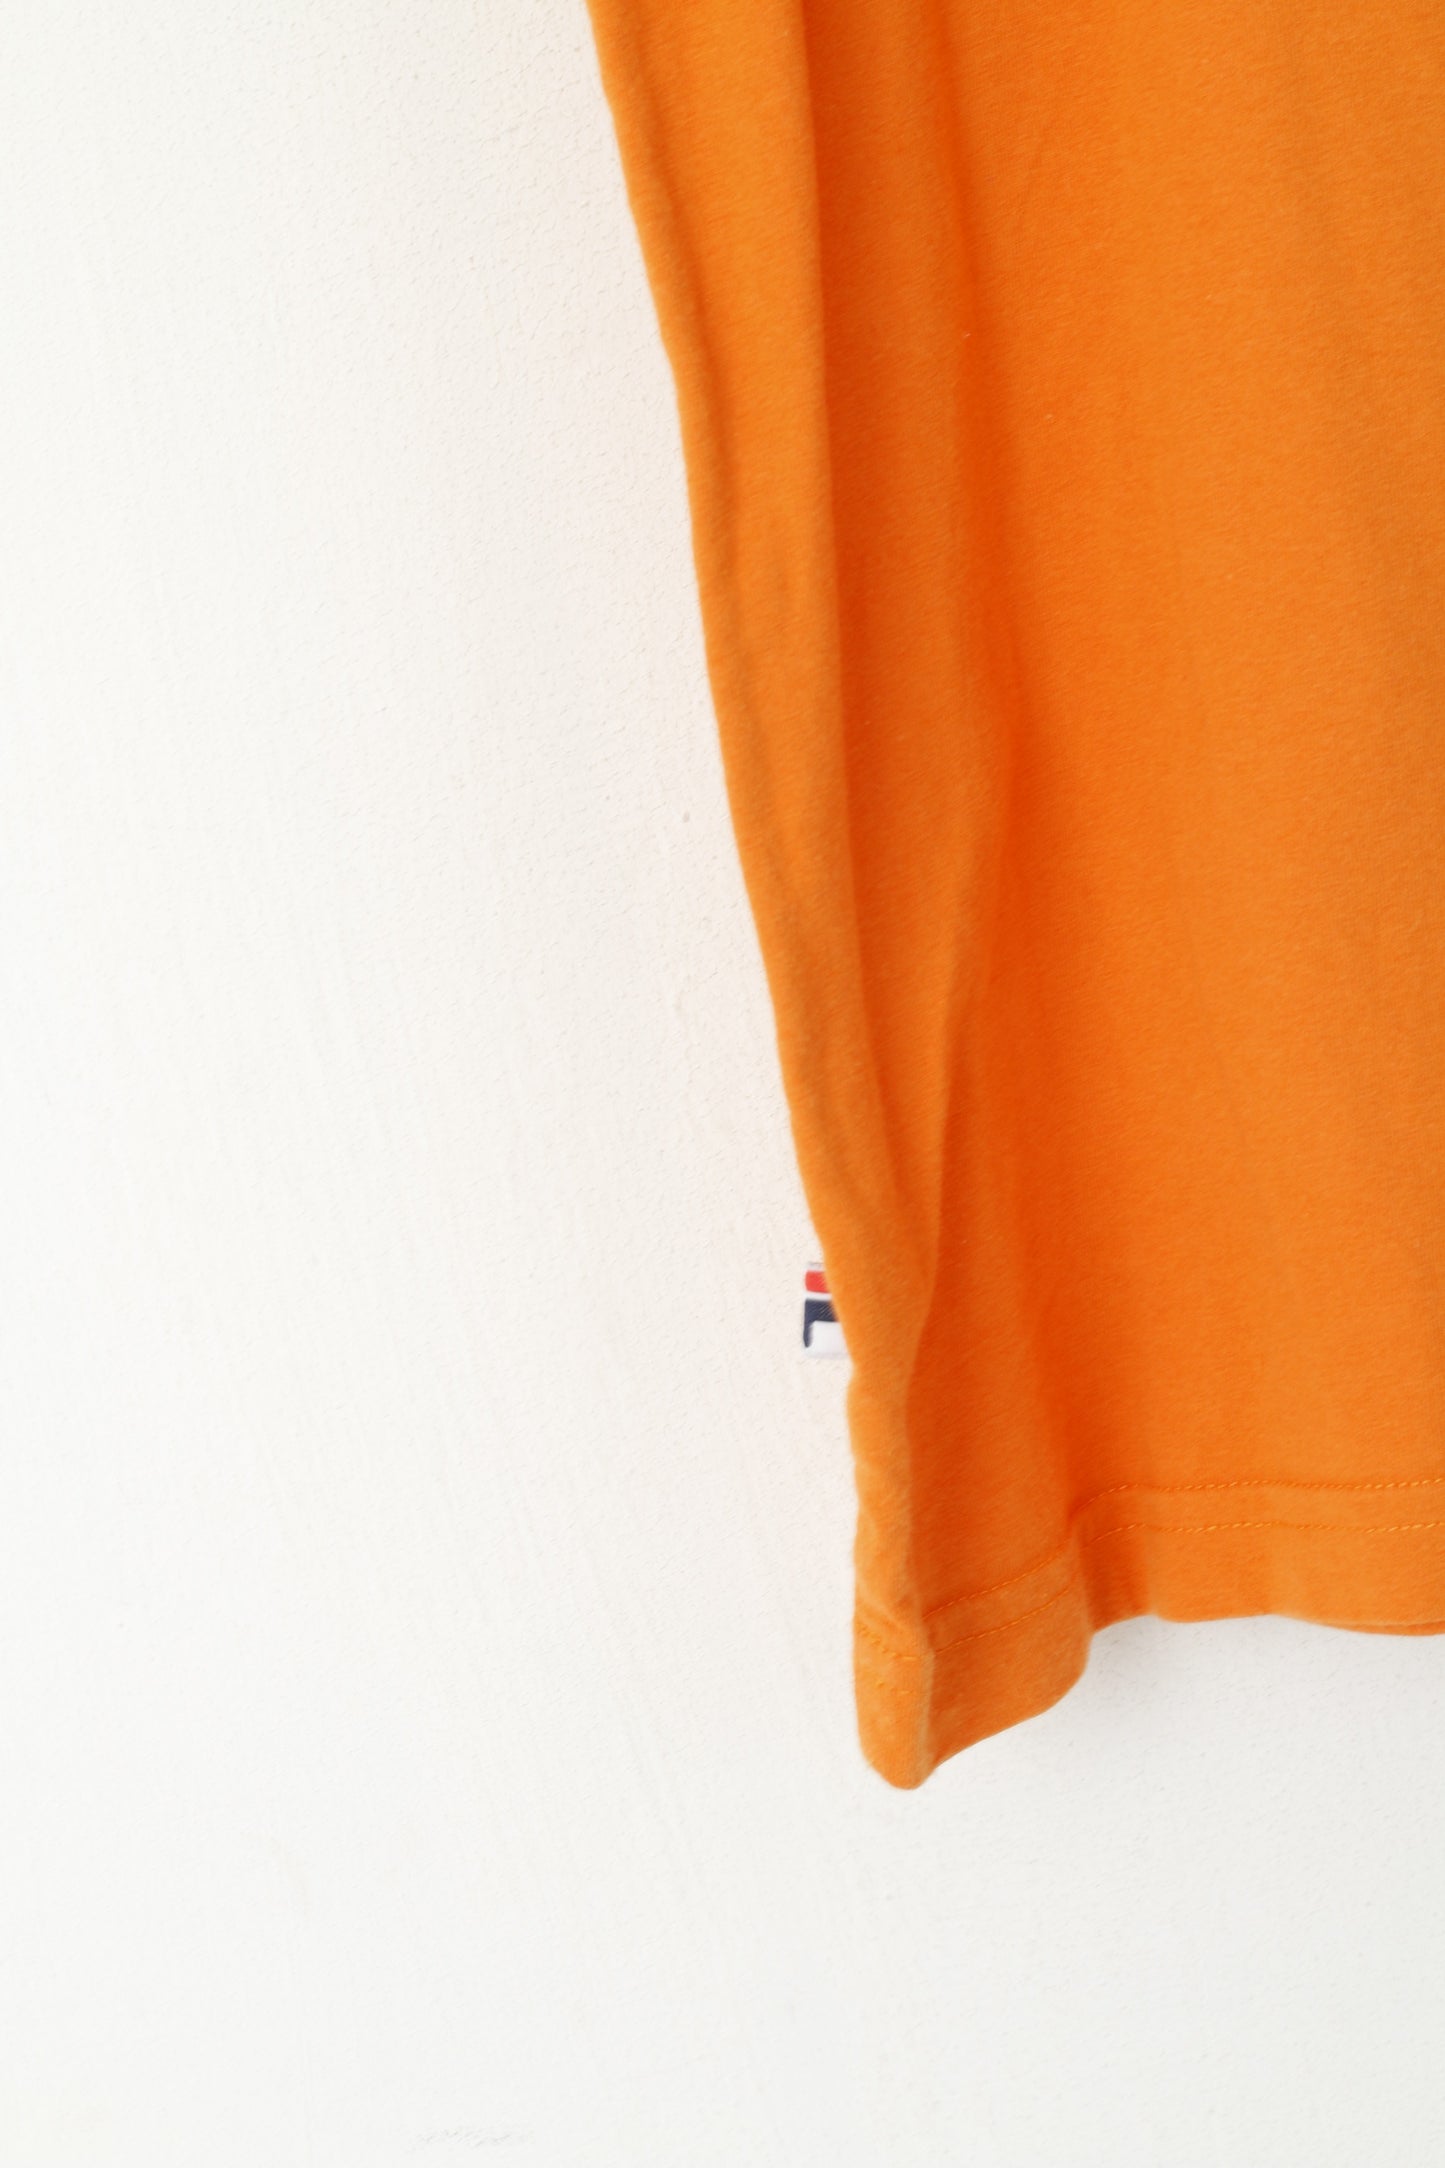 Fila Homme 50 M Chemise Orange Coton Vintage Logo Ras Du Cou Haut Sans Manches